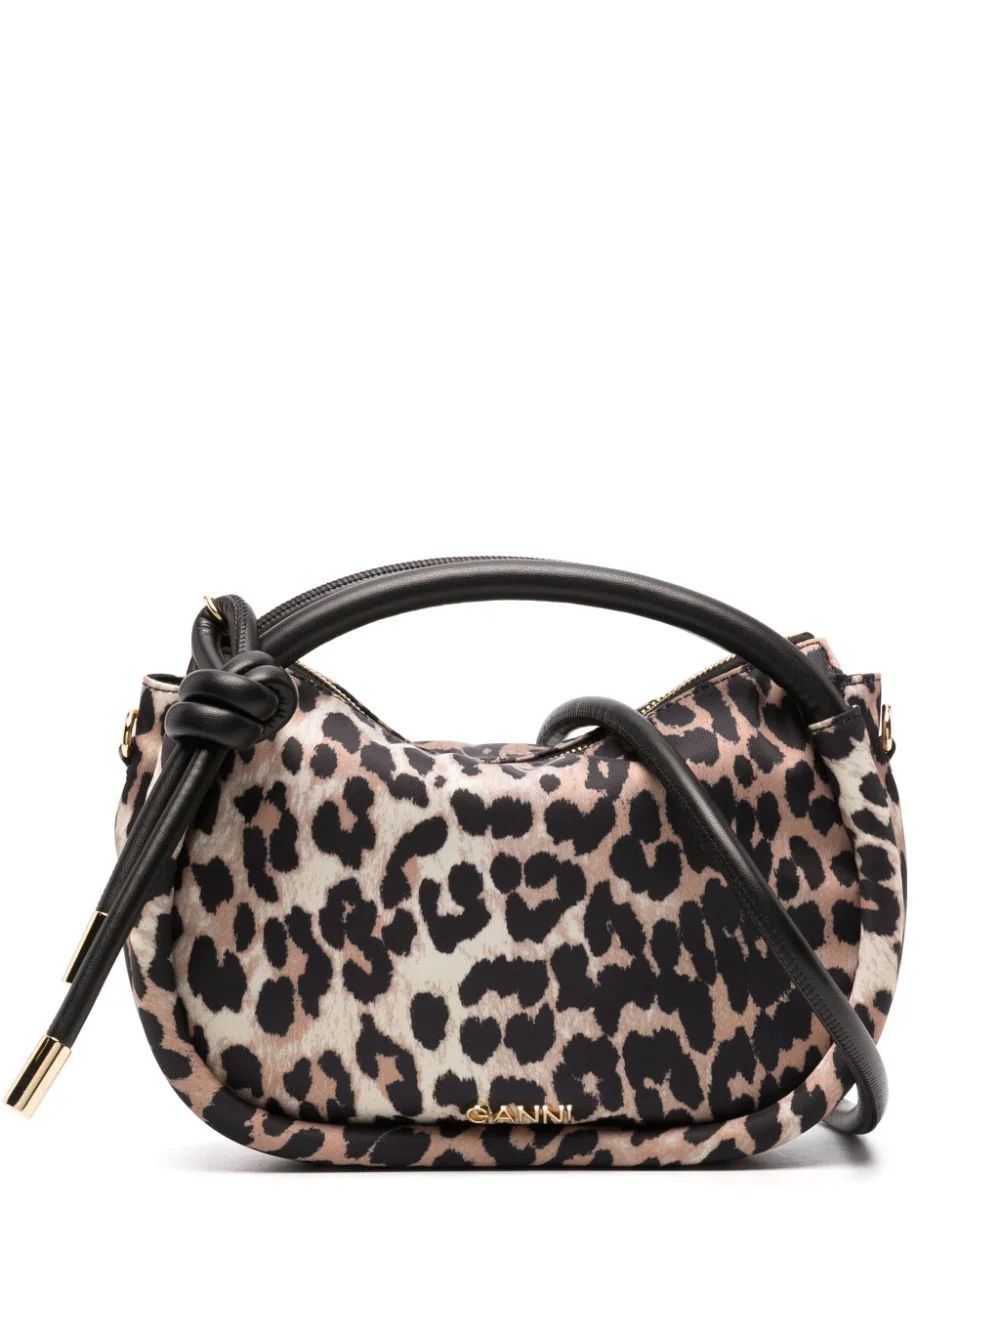 GANNI leopard-print Knot Bag - Farfetch | Farfetch Global